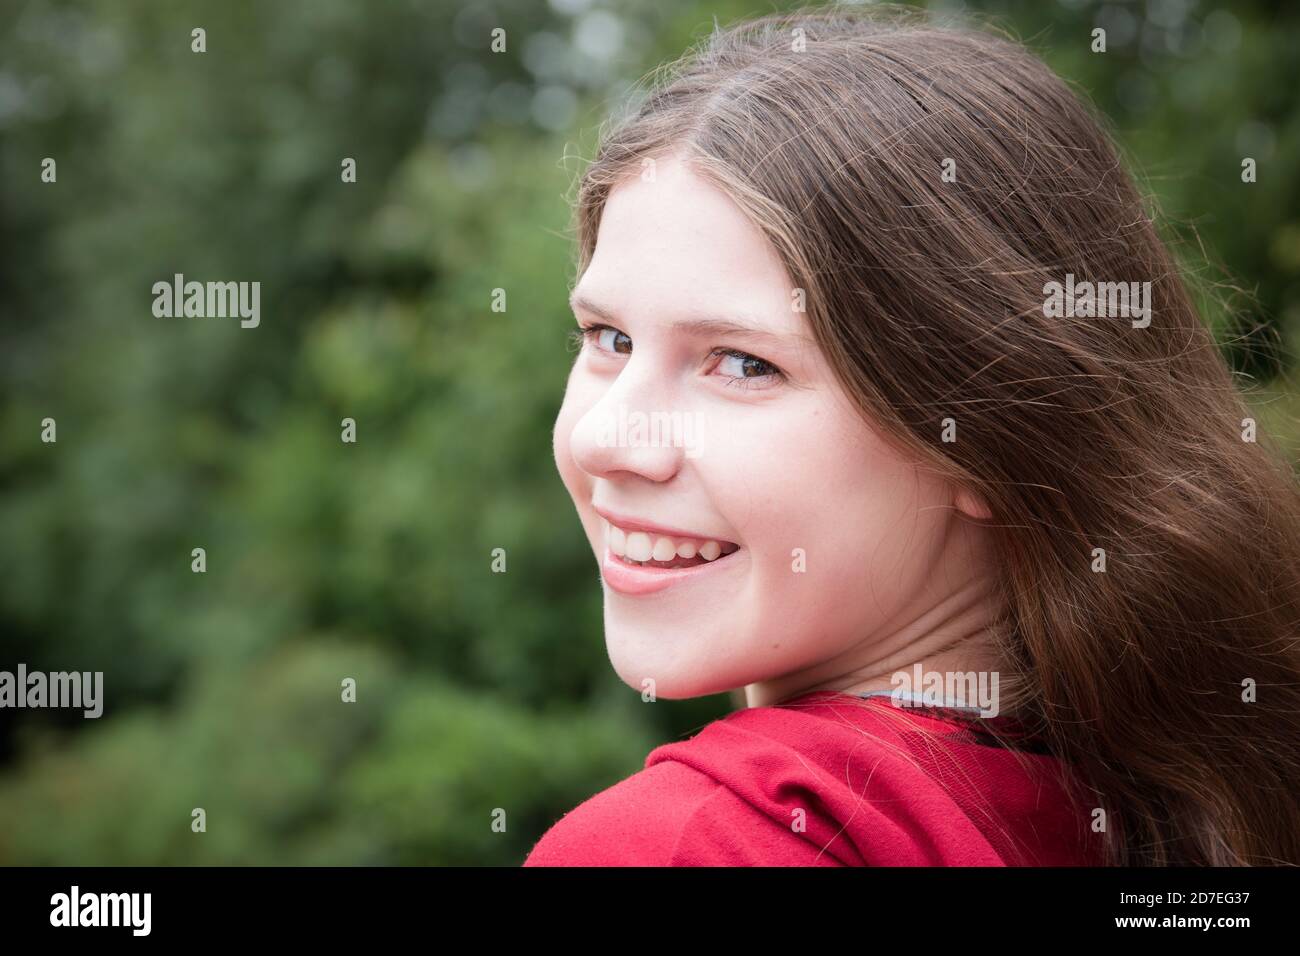 Bel ritratto naturale della ragazza adolescente con lunghi capelli marroni guardando indietro la fotocamera con il sorriso che mostra i denti Foto Stock